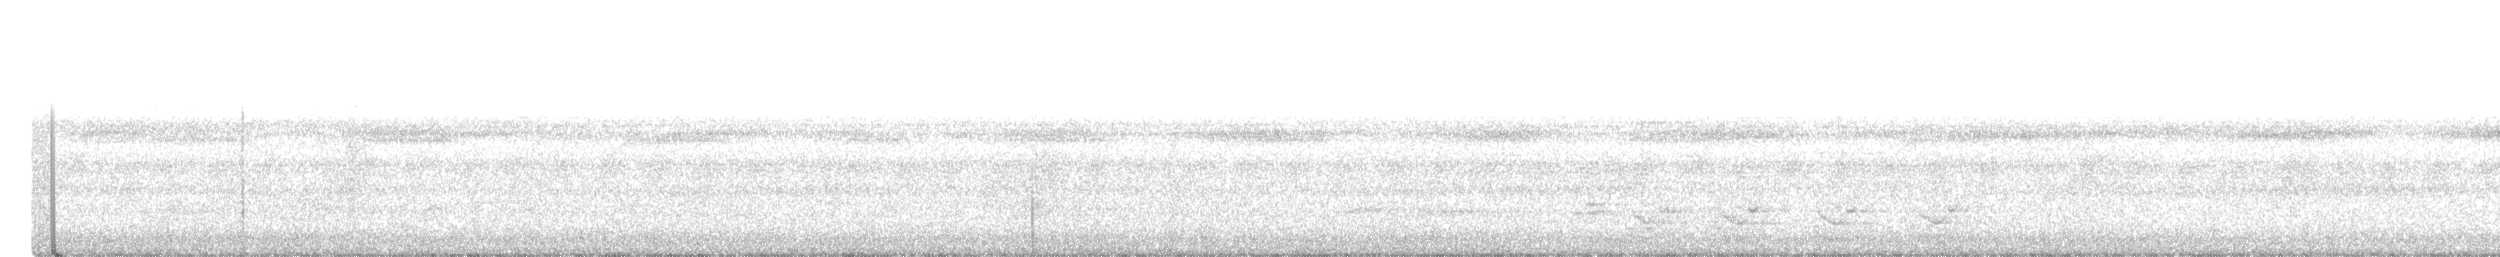 Tinamou de Boucard - ML549058381